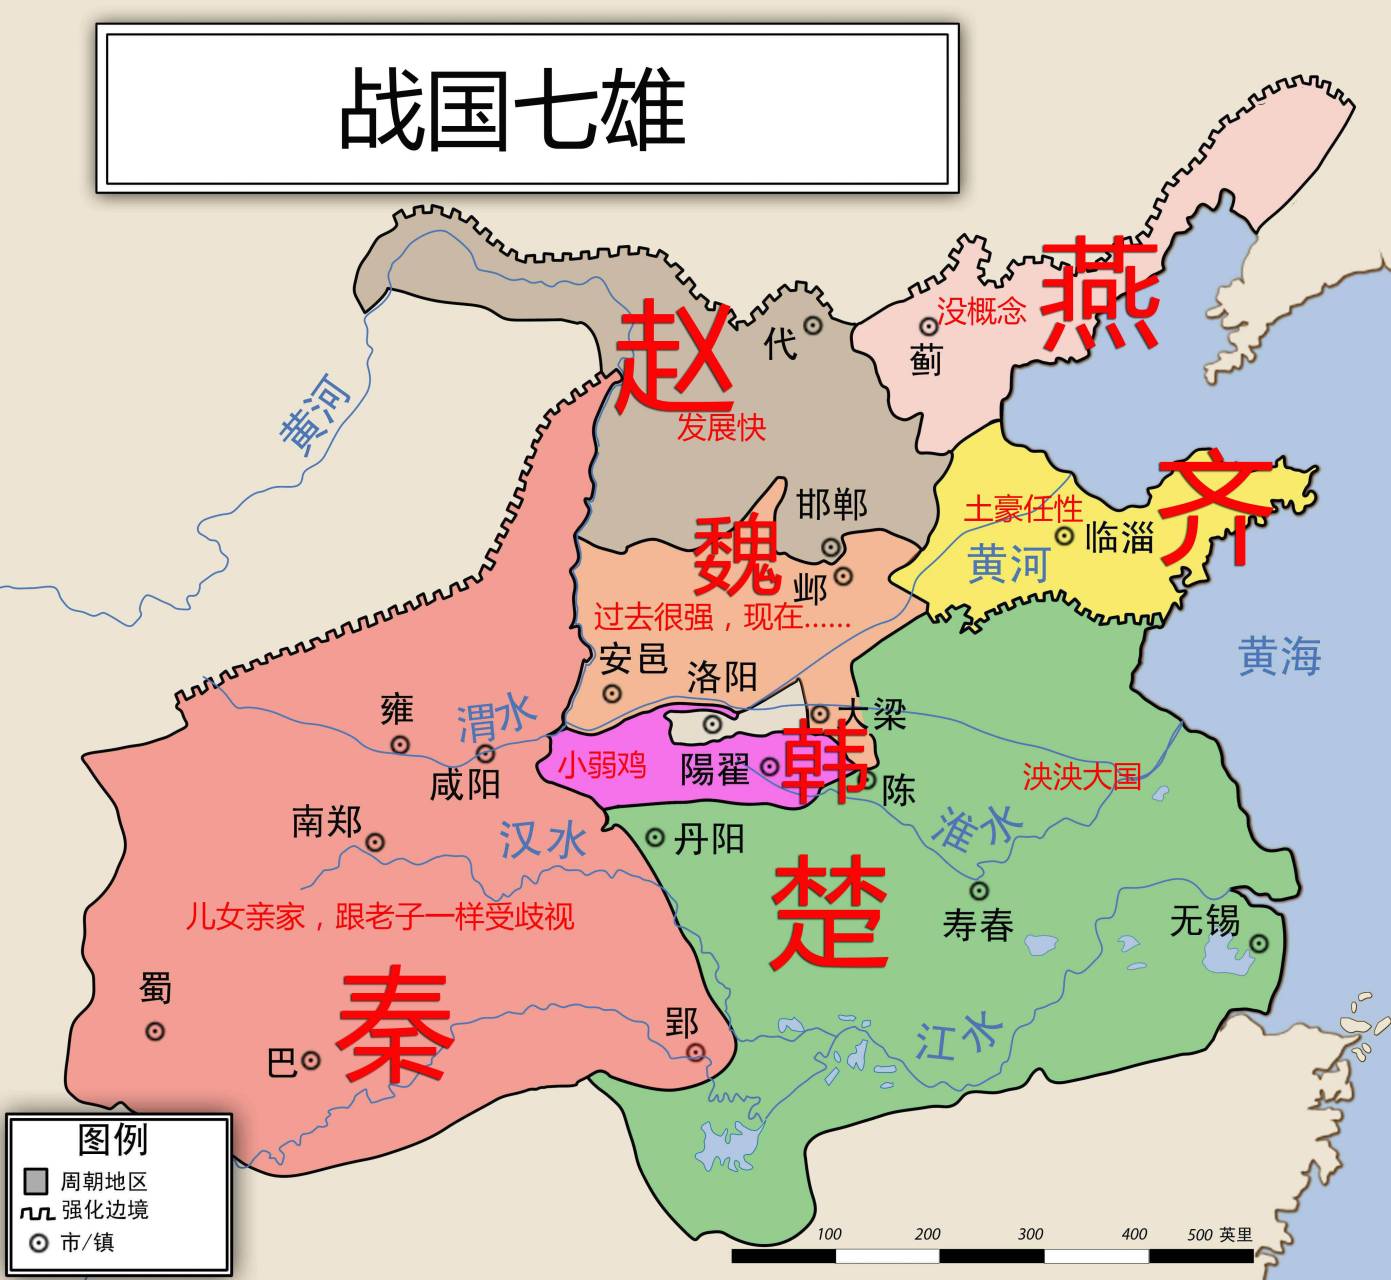 赵武灵王时期的地图图片